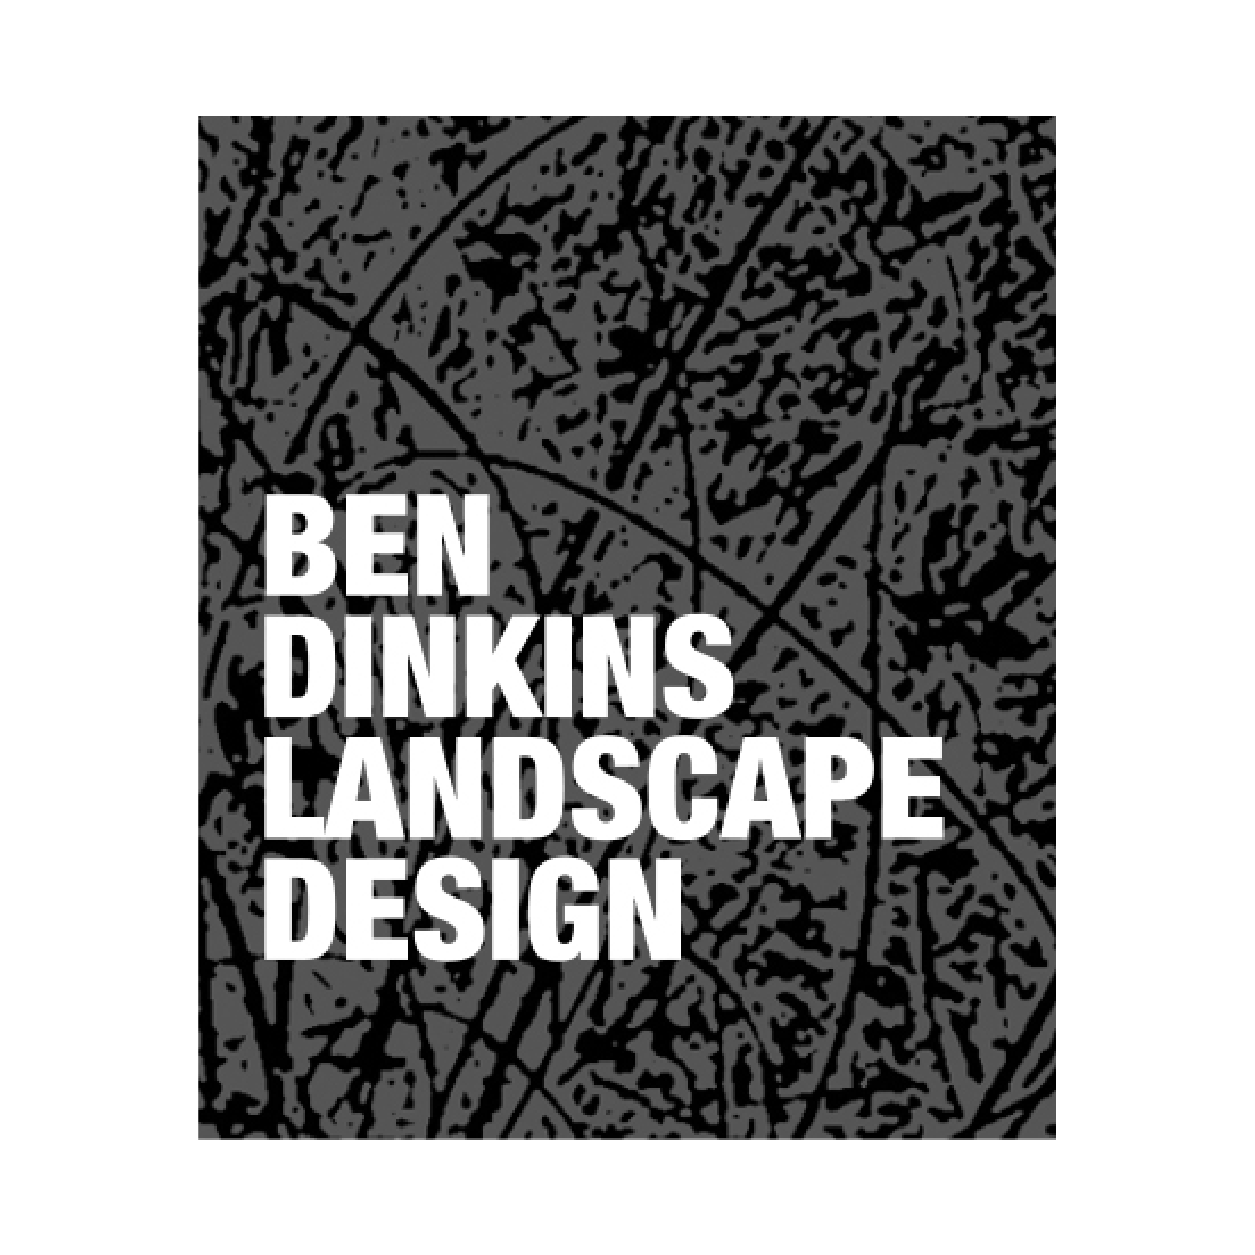 Ben Dinkins Landscape Design